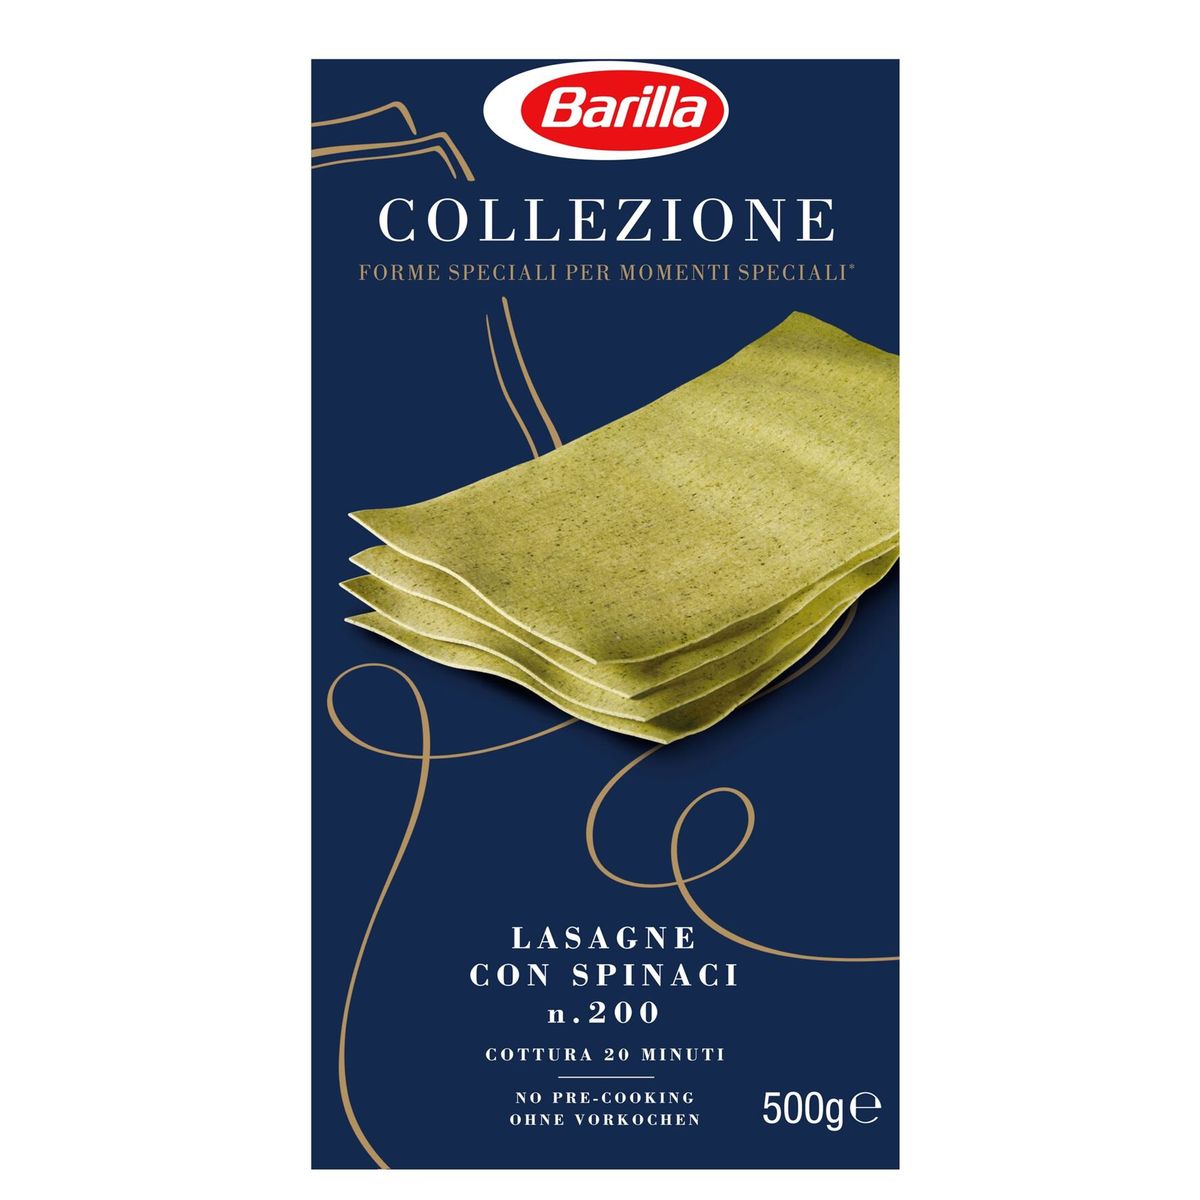 Barilla Lasagne con Spinaci Collezione 500 g